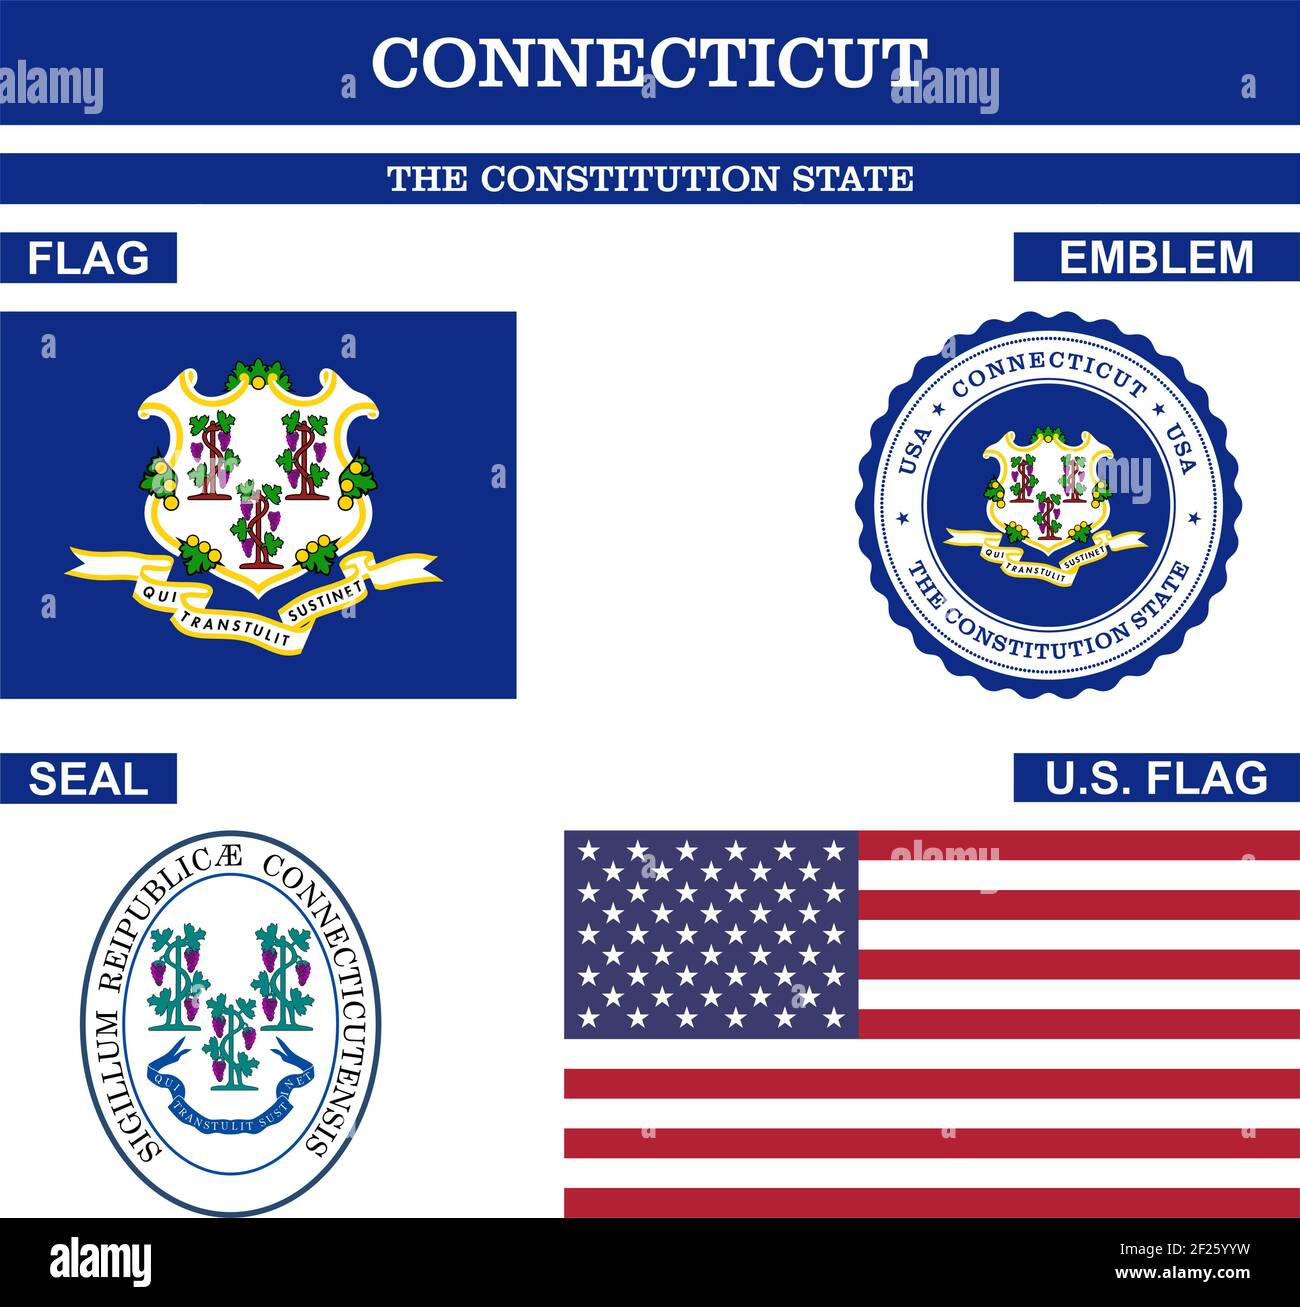 Connecticut Symbol Sammlung mit Flagge, Siegel, US-Flagge und Emblem als Vektor. Der Verfassungsstaat. Detaillierte Vektordarstellung. Stock Vektor